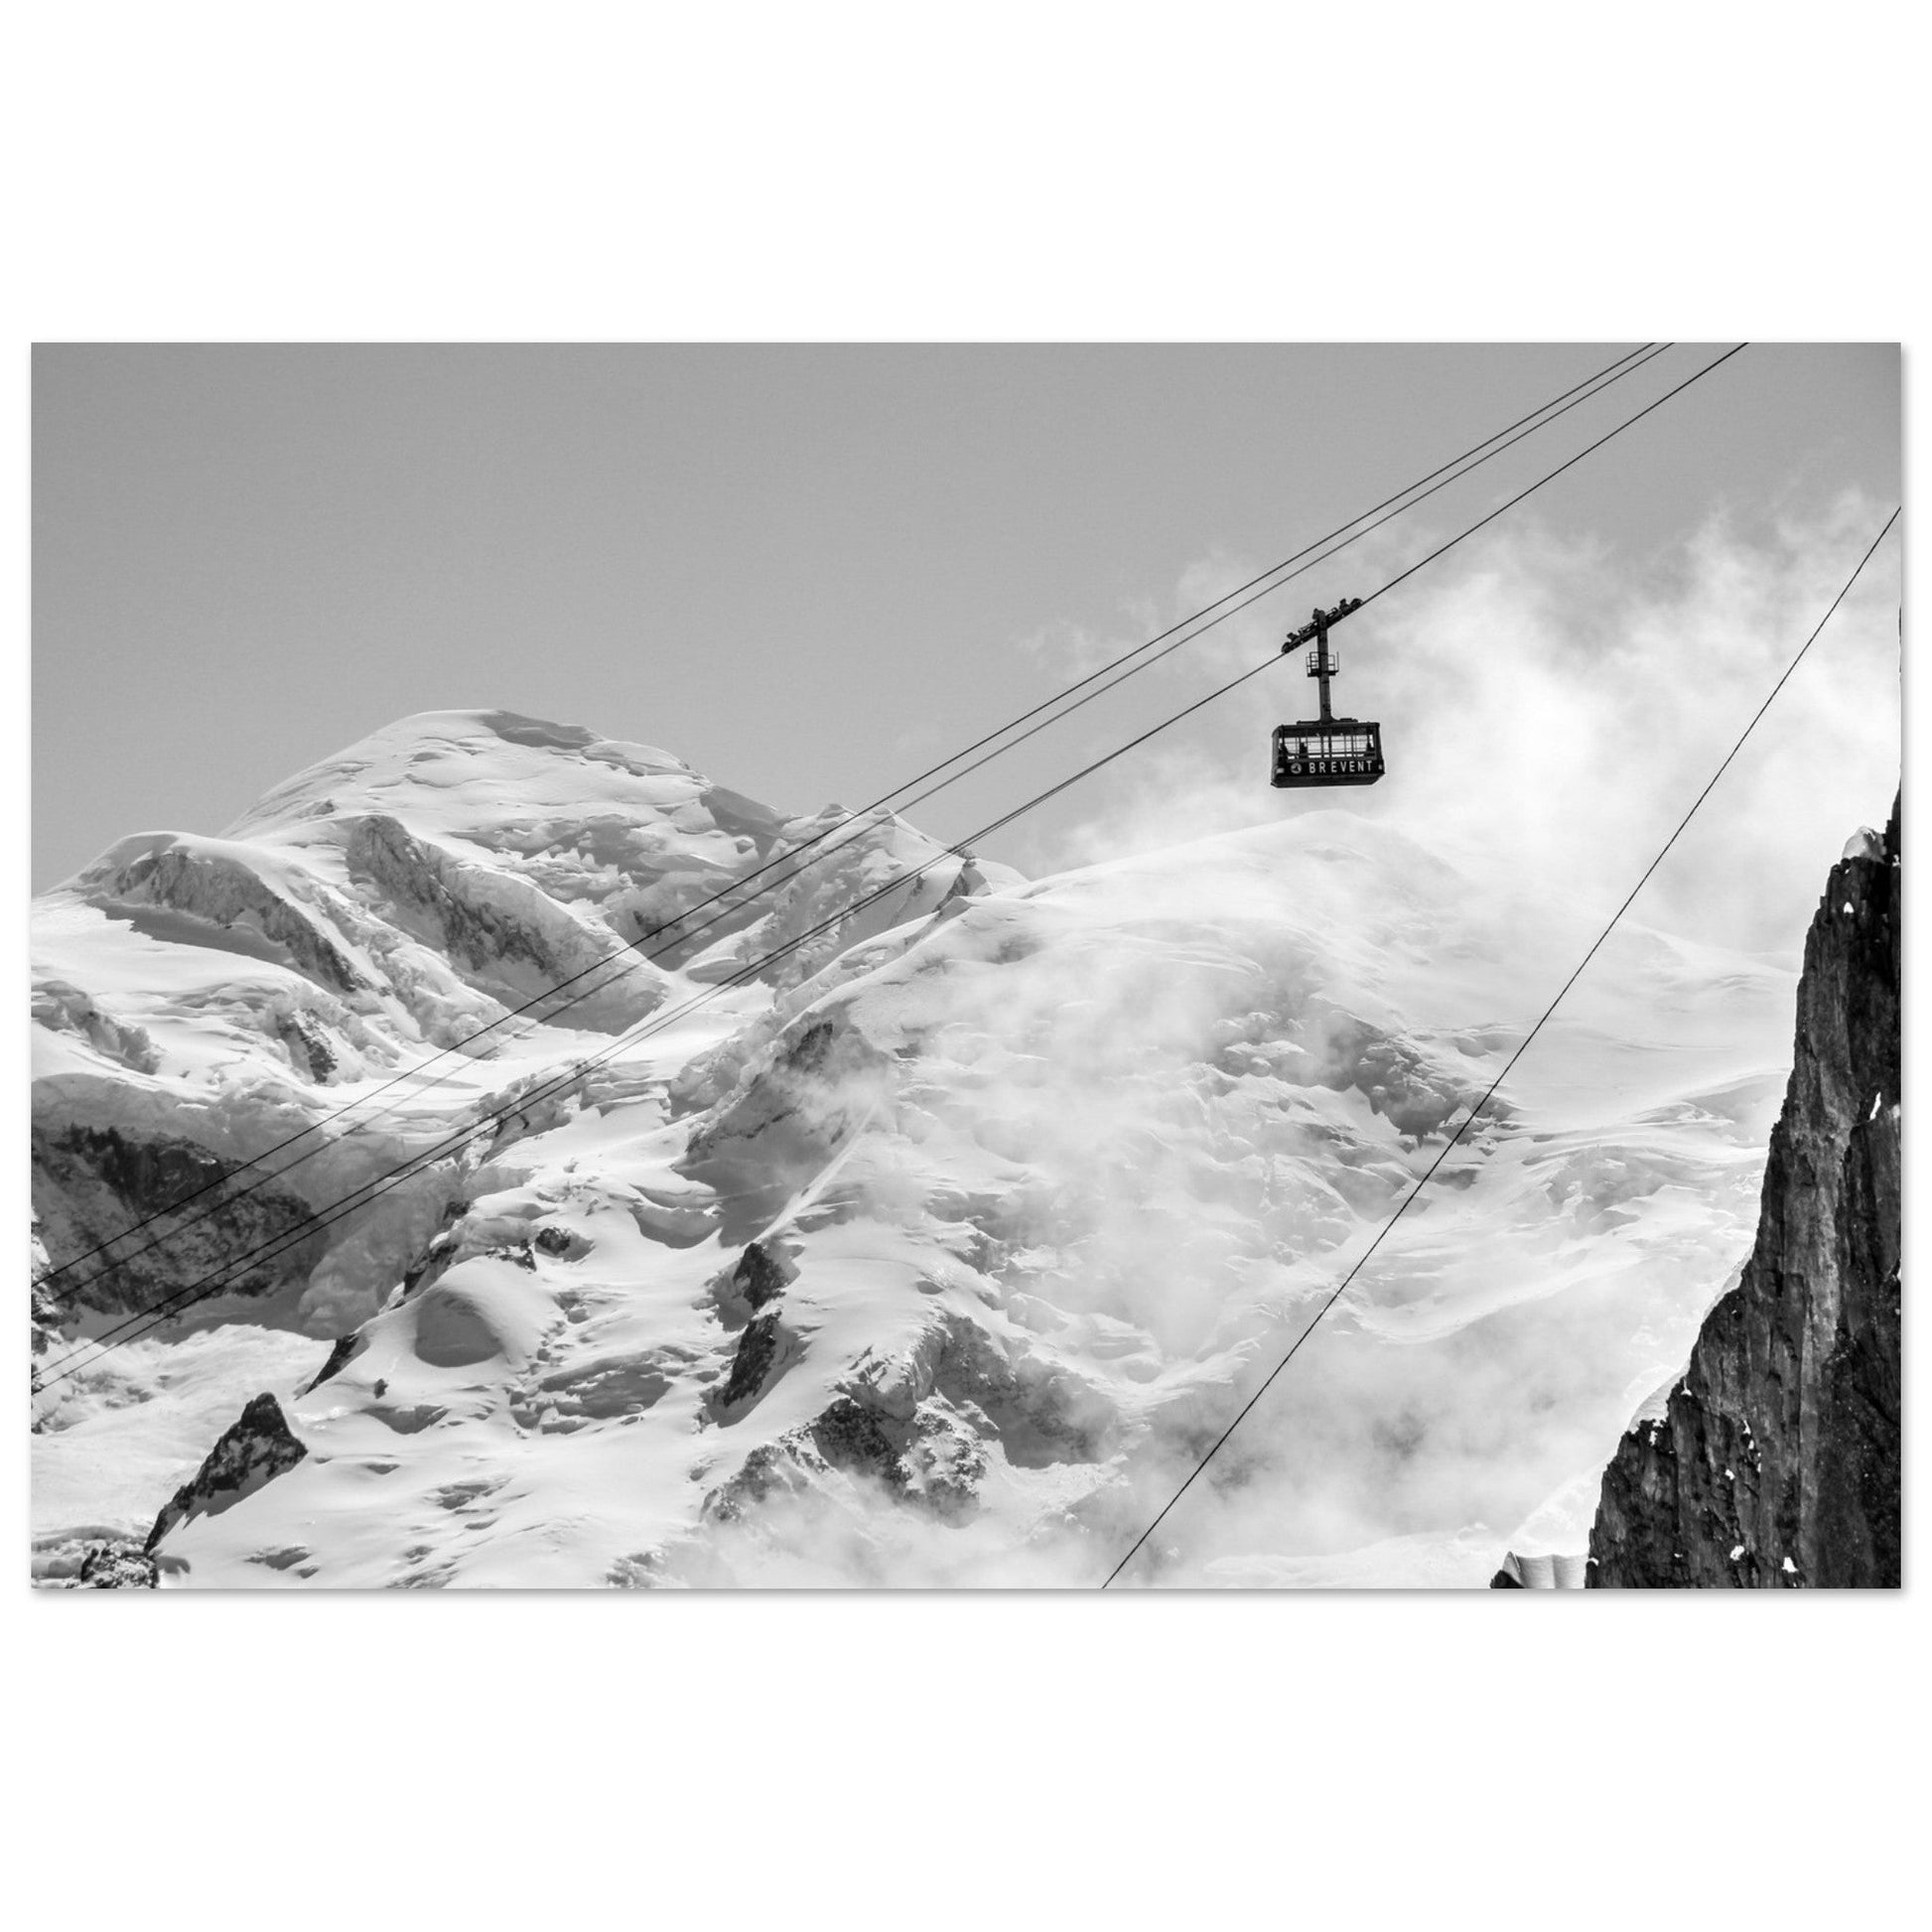 Vente Photo du Mont-Blanc et de la télécabine du Brévent - Tableau photo alu montagne